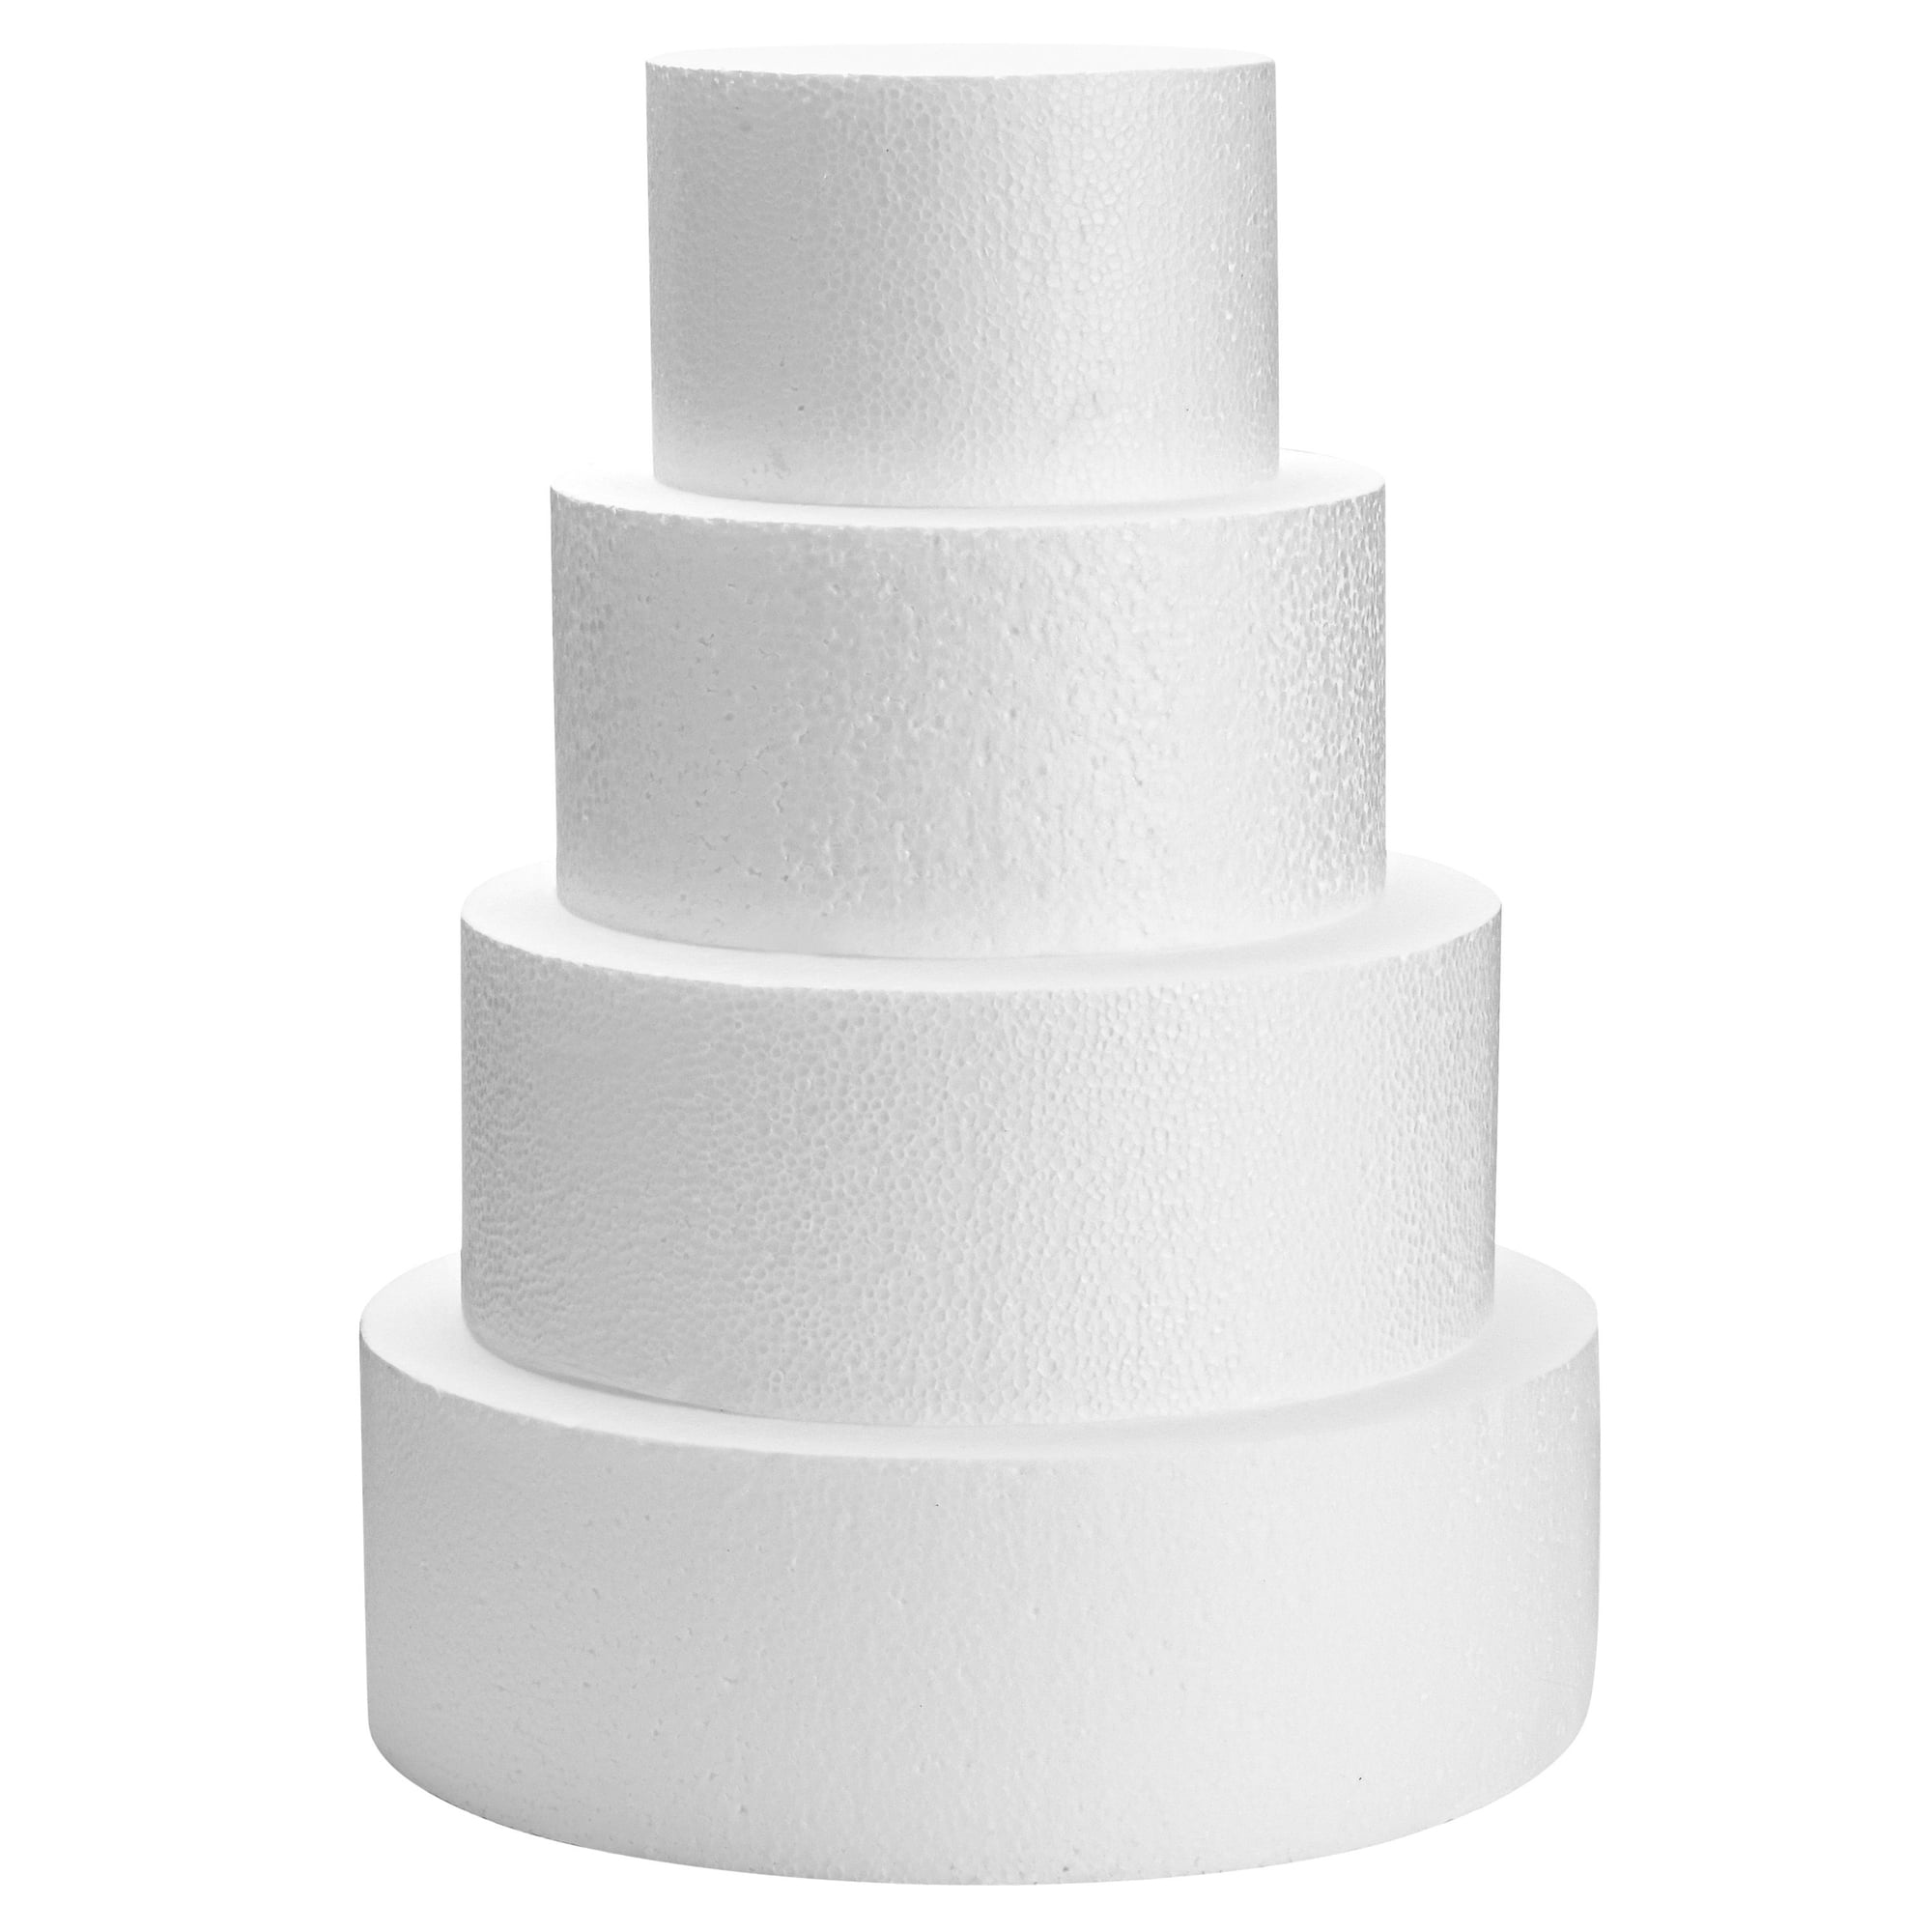 Set of 4 Round Foam Cake Dummies in Varying Sizes for 16 Tall Fake Wedding Cake 6 8 10 and 12 in 5e87435f 2c2e 47e7 8b65 88b74e626343.649f0363210044c6b8f931808b386863